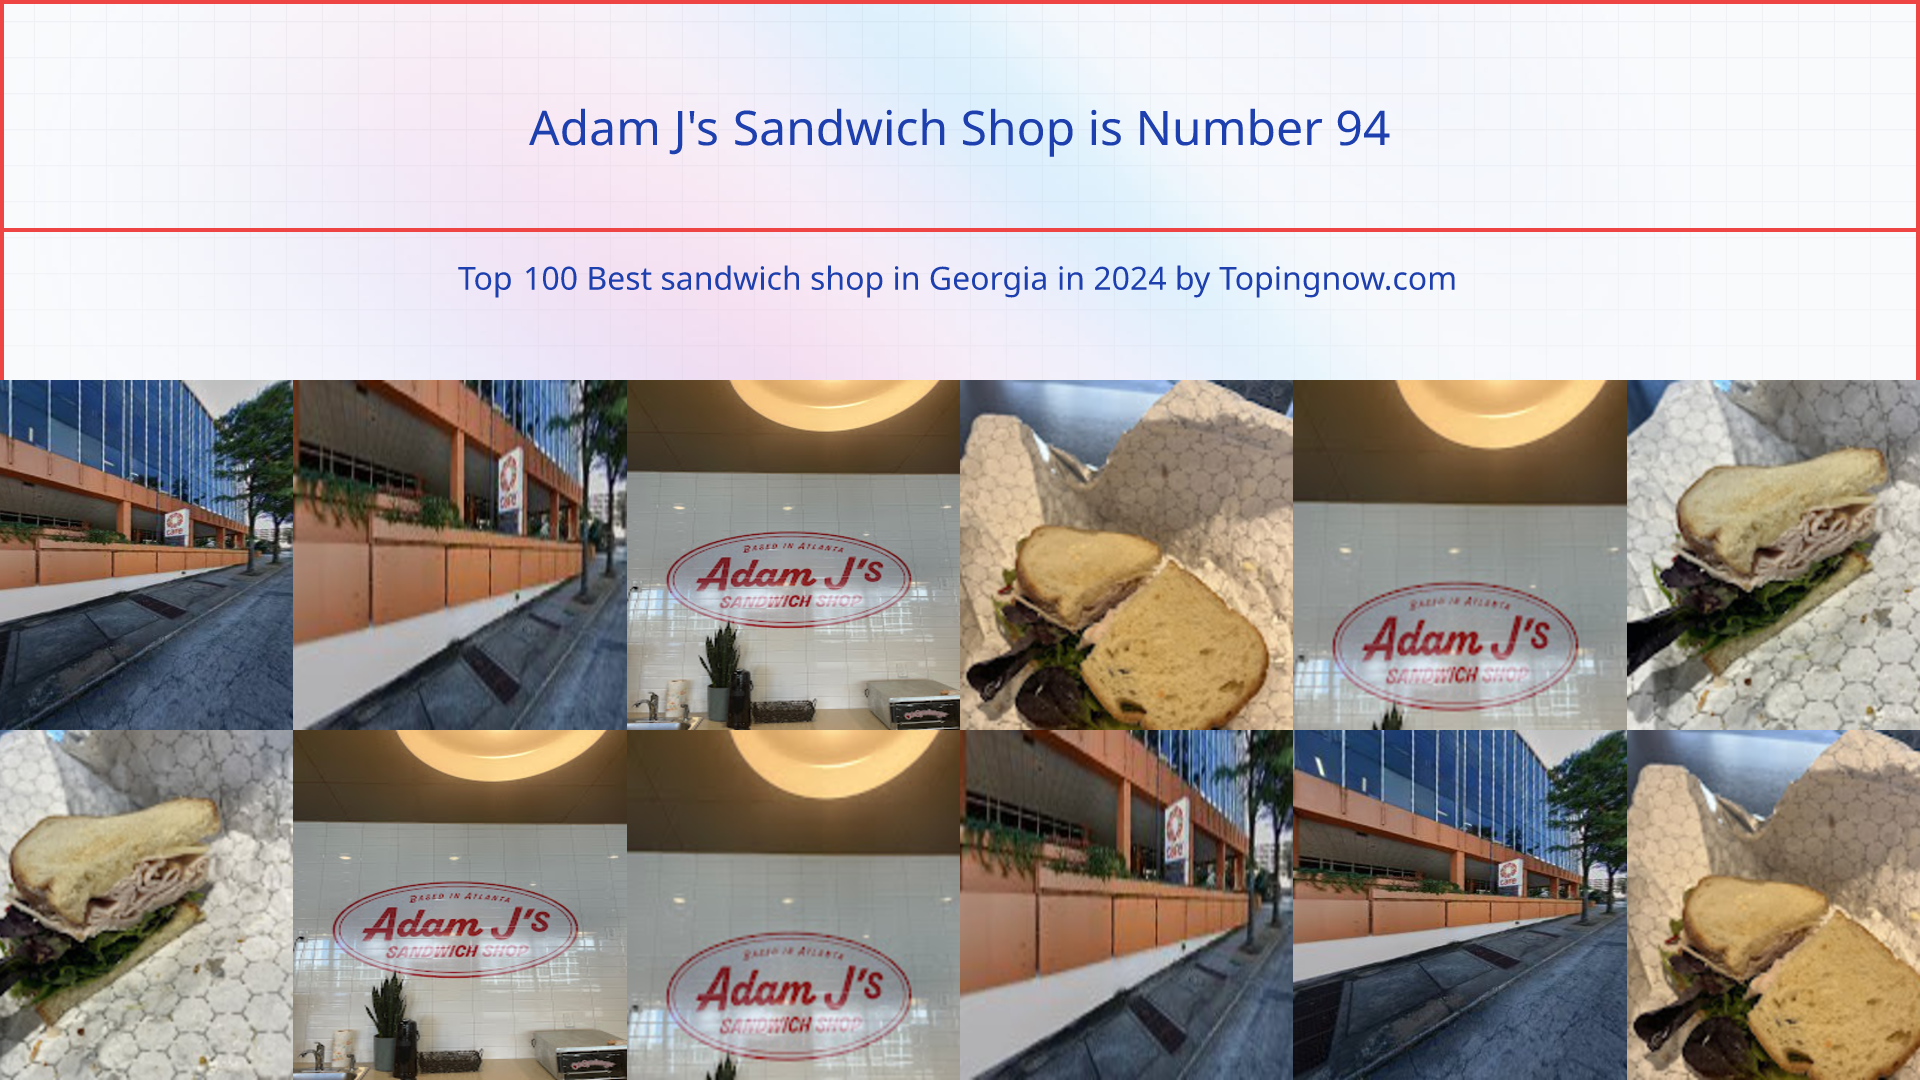 Adam J's Sandwich Shop: Top 100 Best sandwich shop in Georgia in 2024